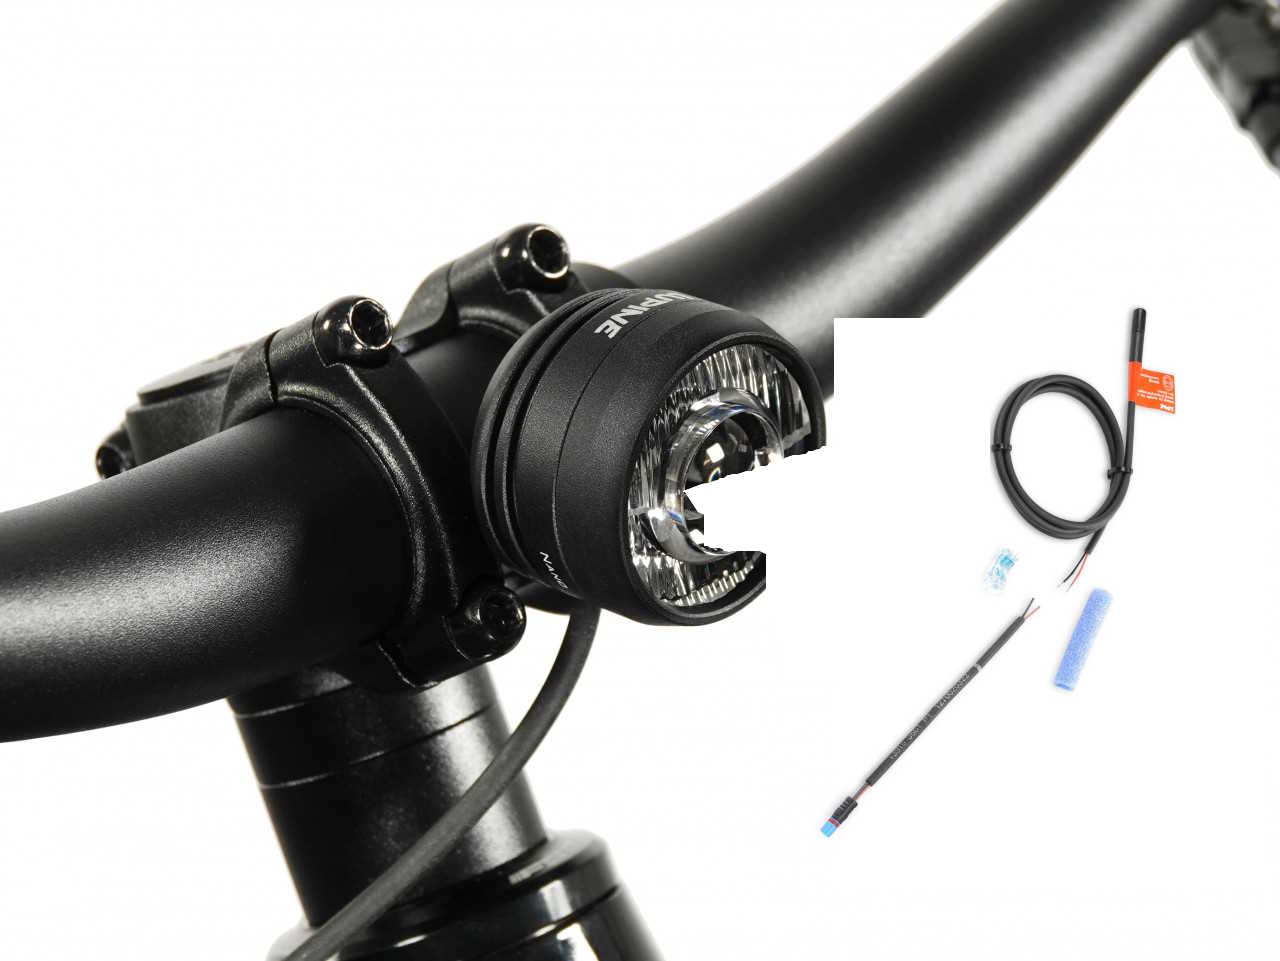 Produktbild von Lupine SL Nano für E-Bikes mit Bosch BES3 Motor, E-Bike Beleuchtung mit 900 Lumen Fernlicht, Lenkerhalter 35mm + Kabelfernbedienung